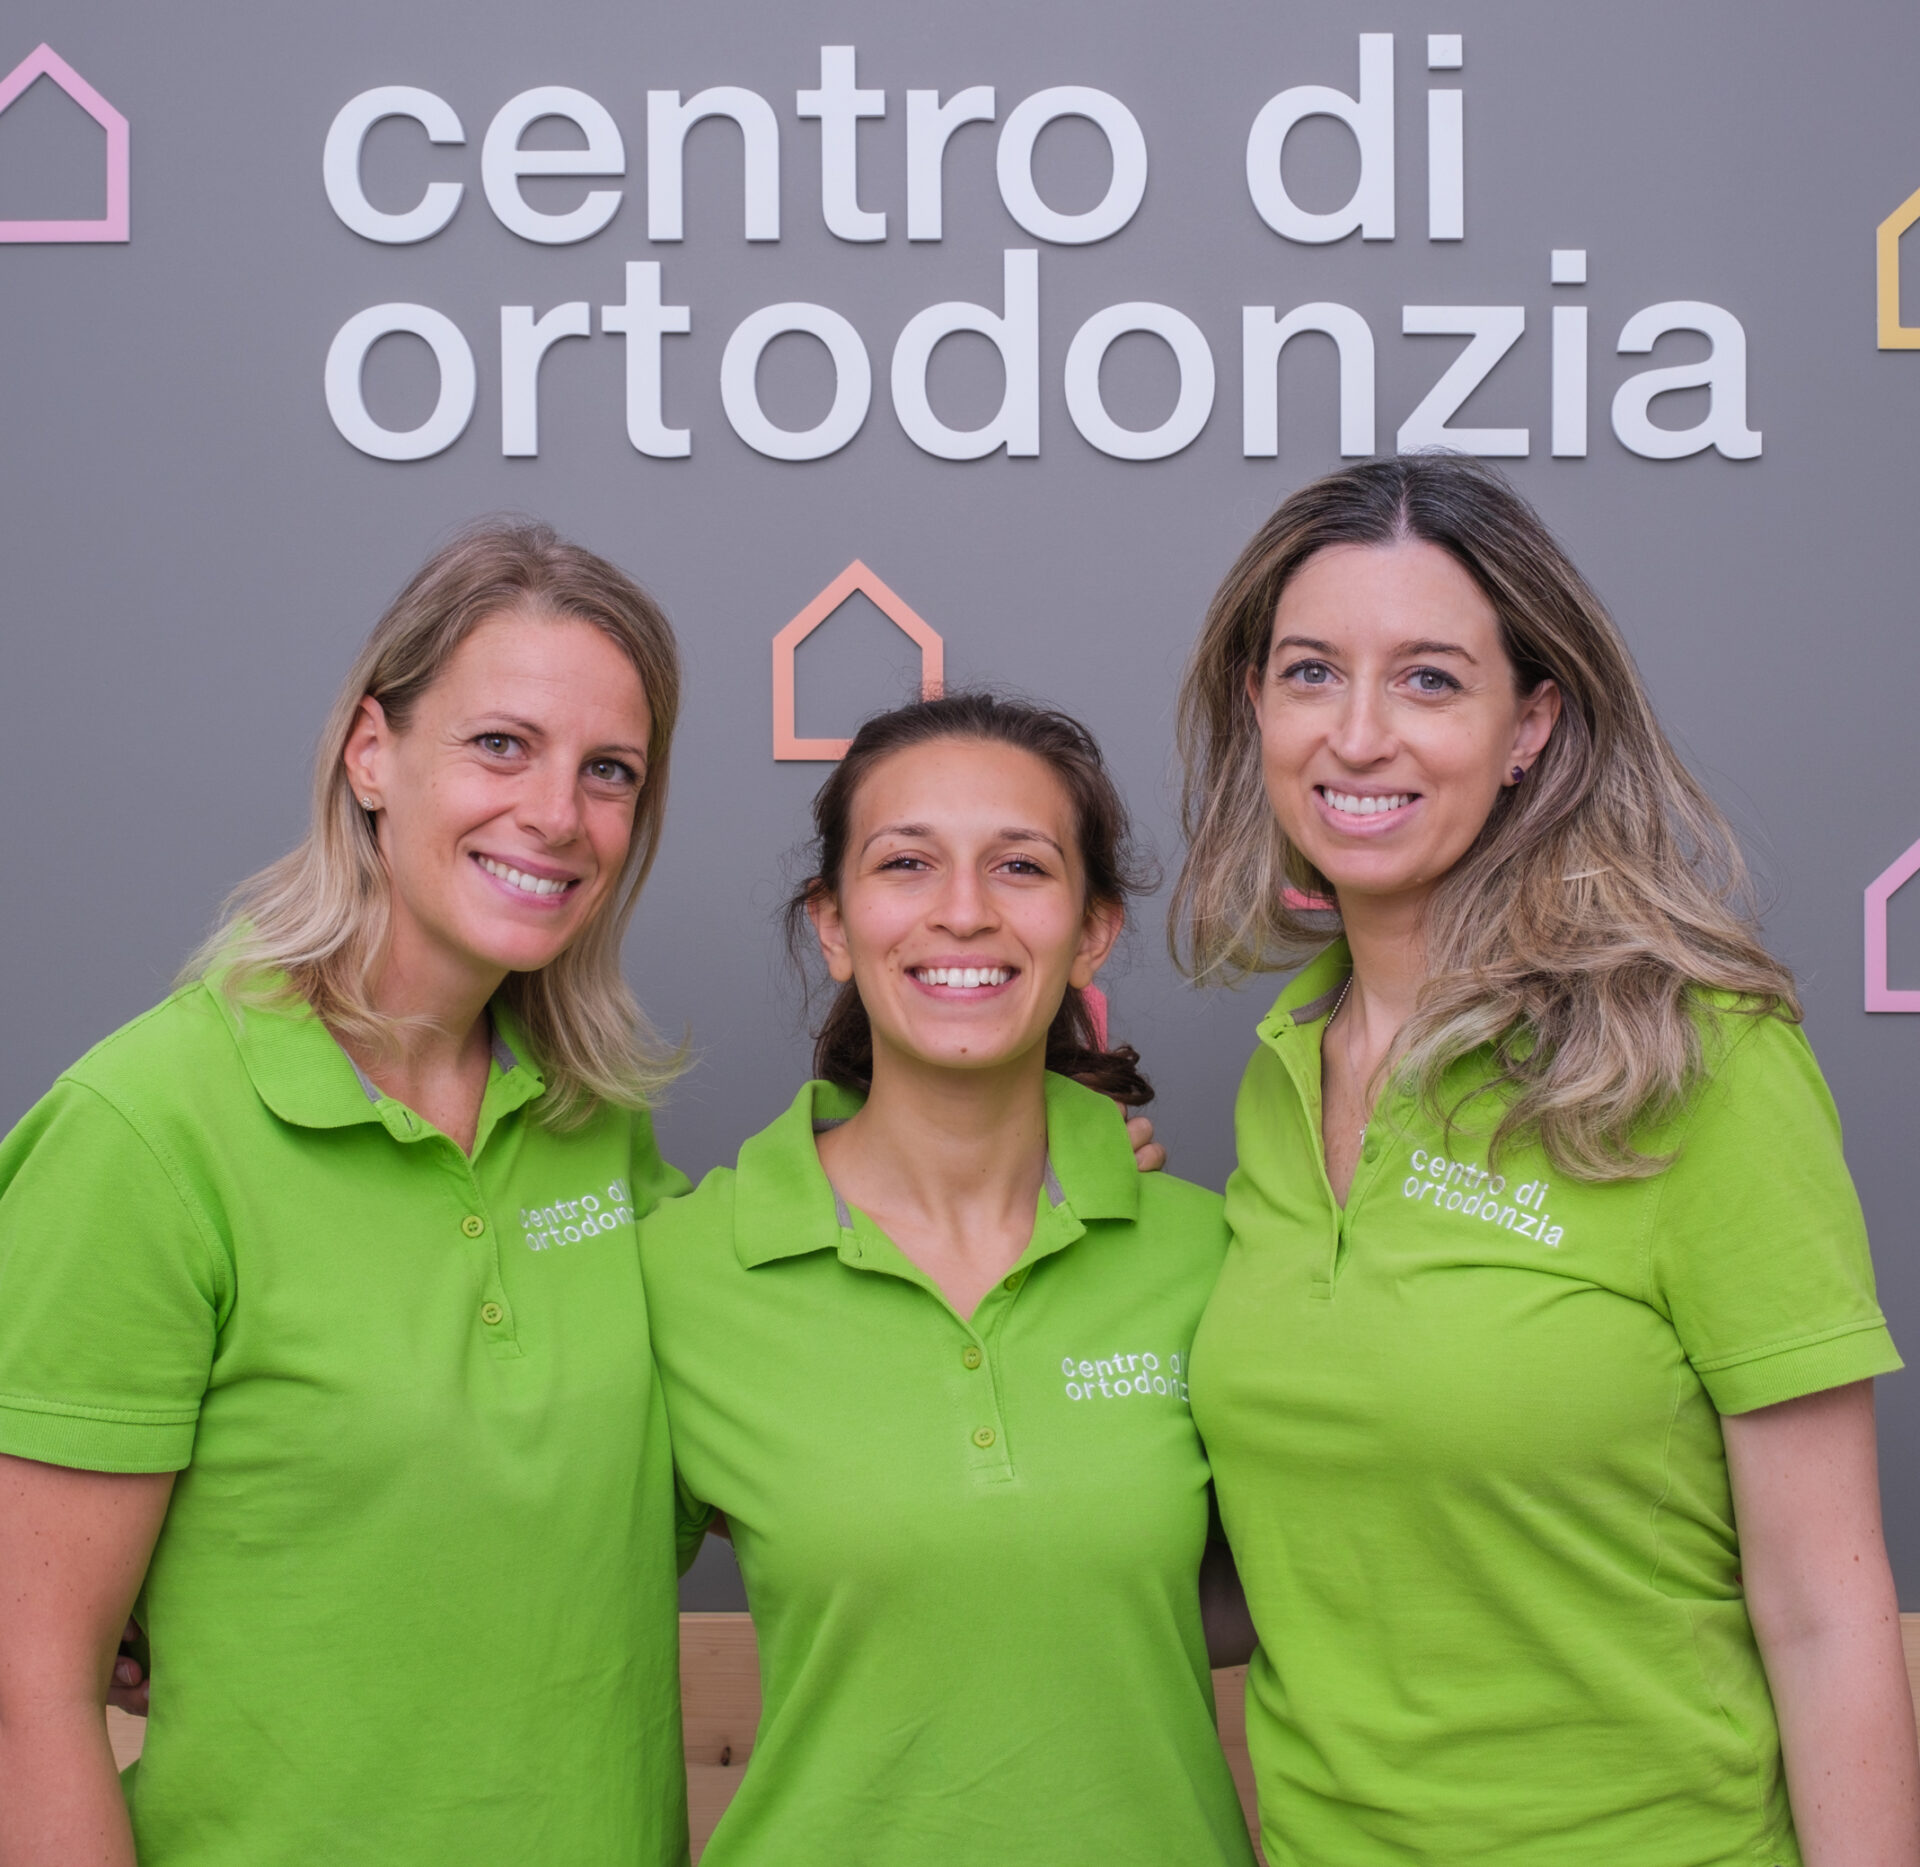 Le dottoresse del centro di ortodonzia di Genova